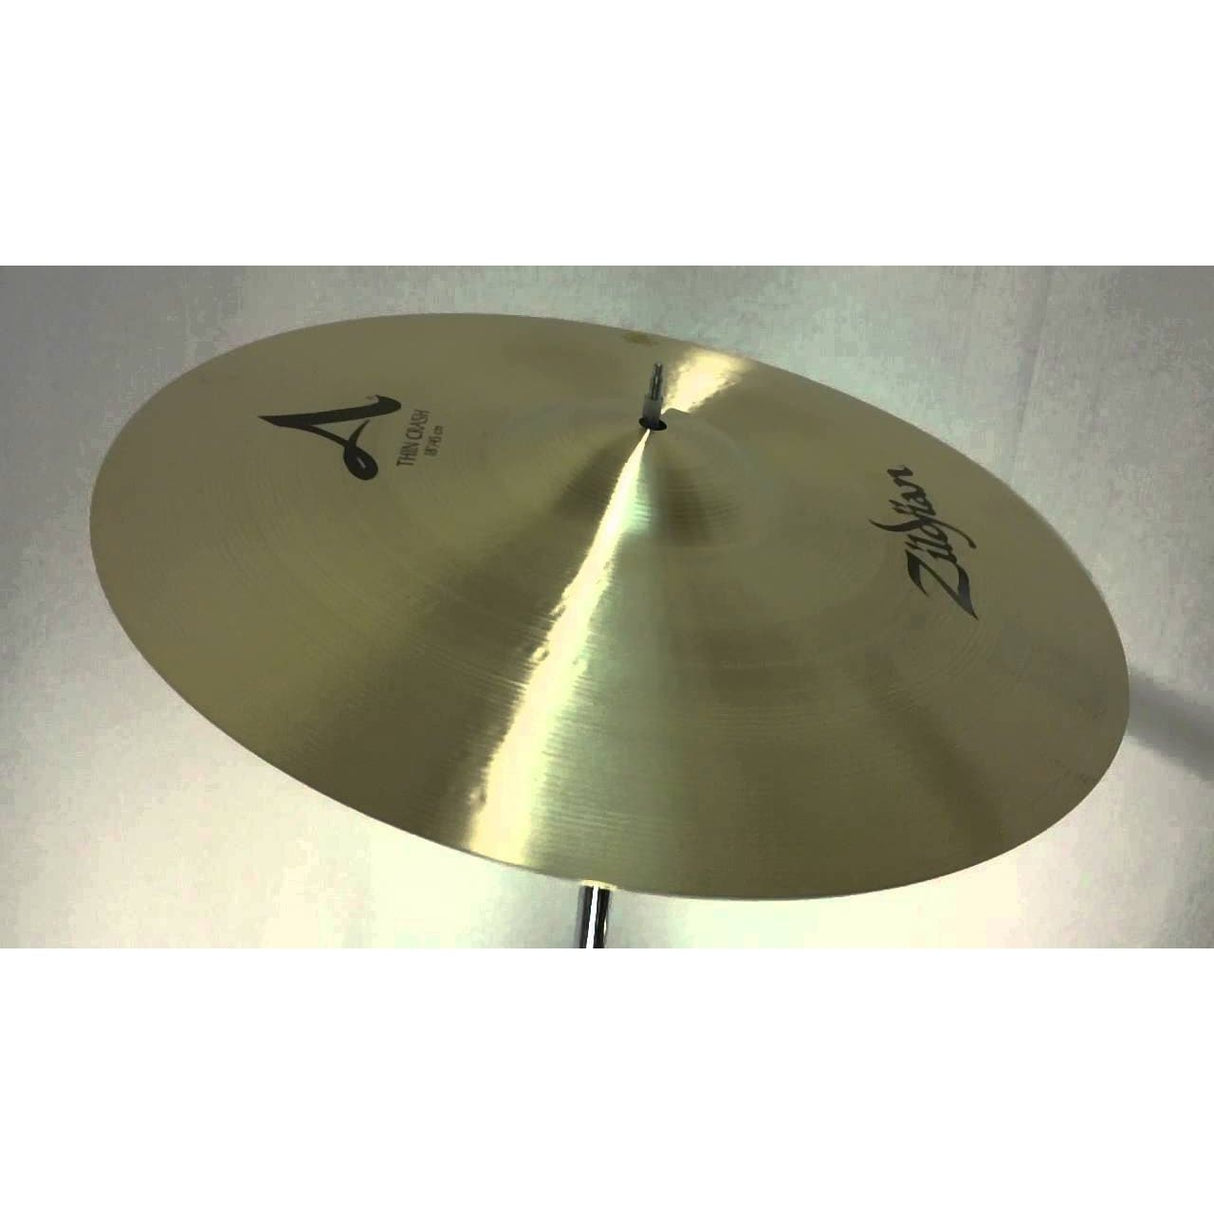 Zildjian A Thin Crash Cymbal 18"